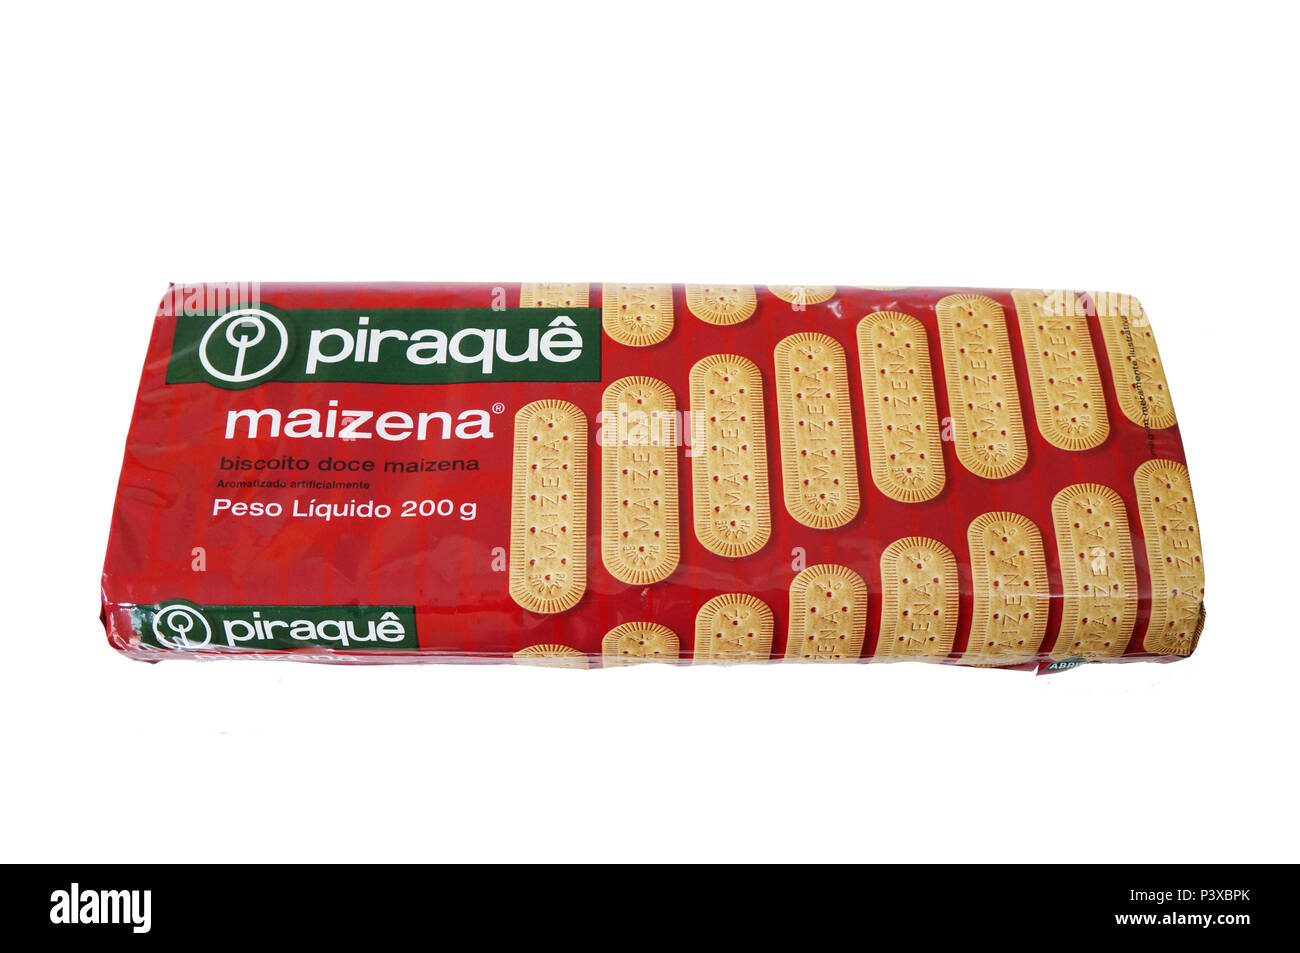 Pacote de biscoitos/bolachas de amido de milho (Maizena) da marca Piraquê em fundo Branco. Foto de stock